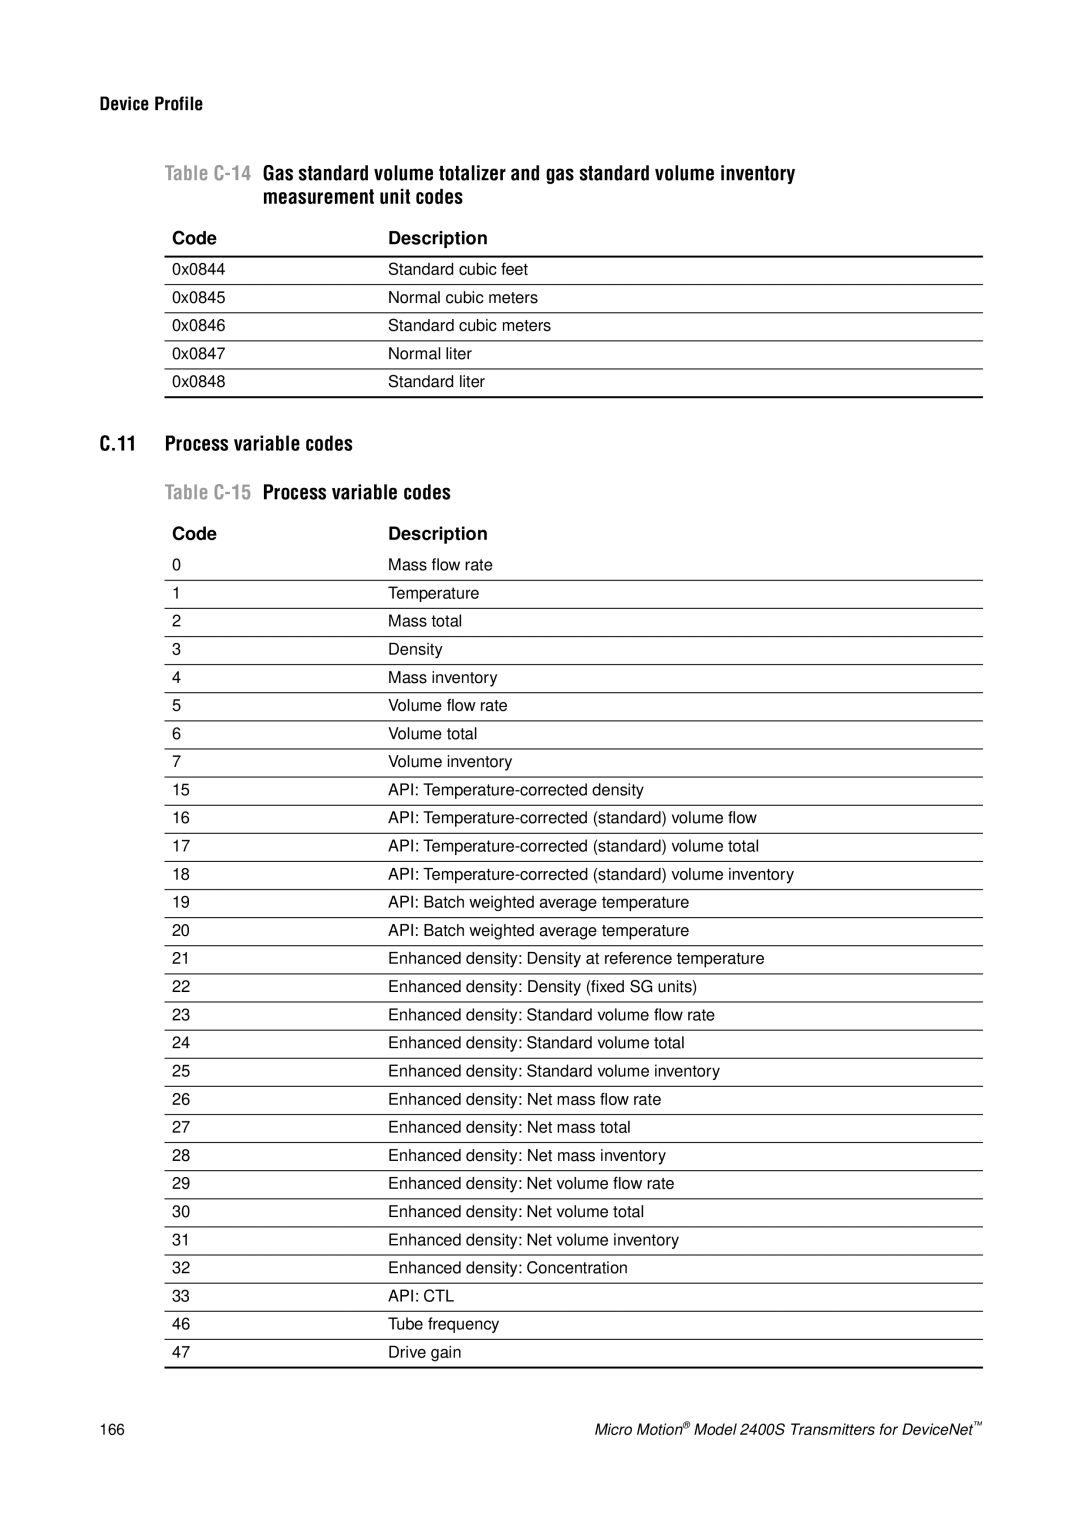 Emerson Process Management 2400S manual measurement unit codes, C.11, Process variable codes, Table C-14, Table C-15 